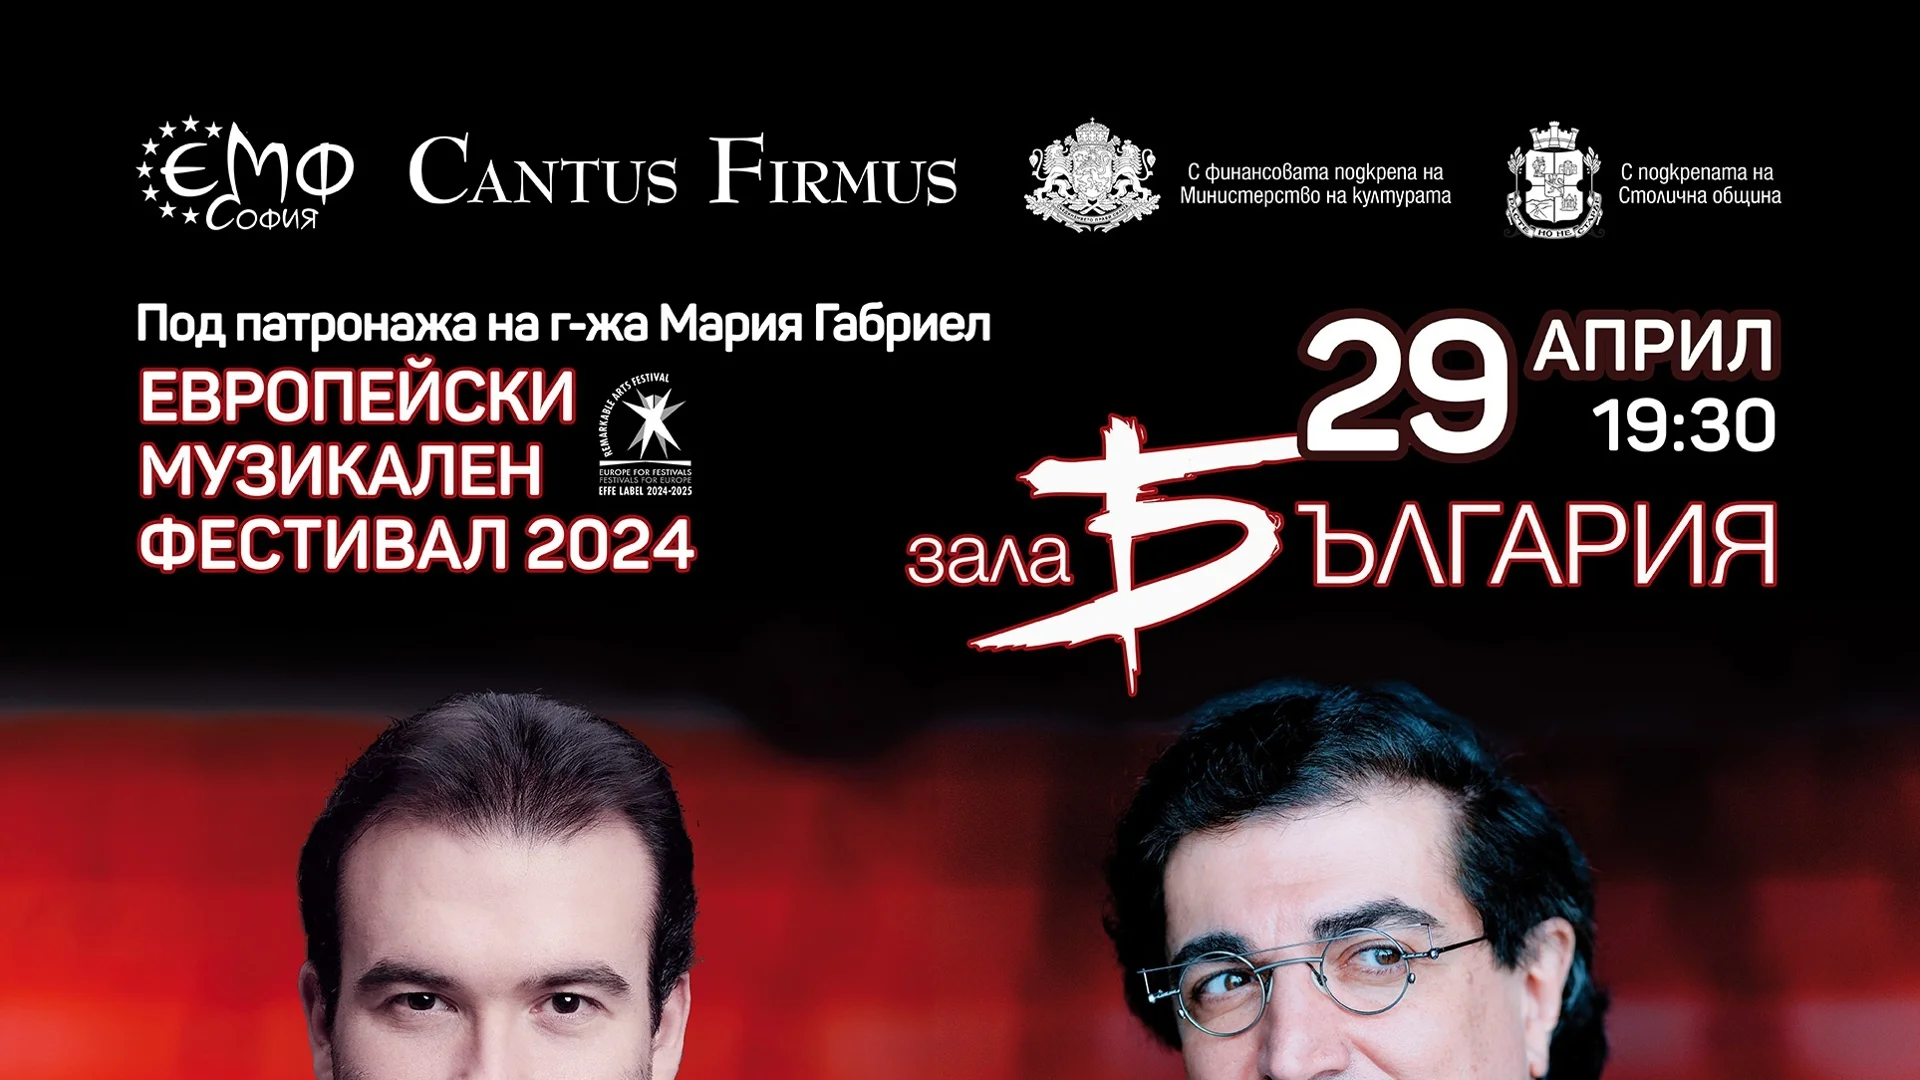 Един от най-великите съвременни пианисти - Сергей Бабаян, с концерт с оркестър "Кантус Фирмус"